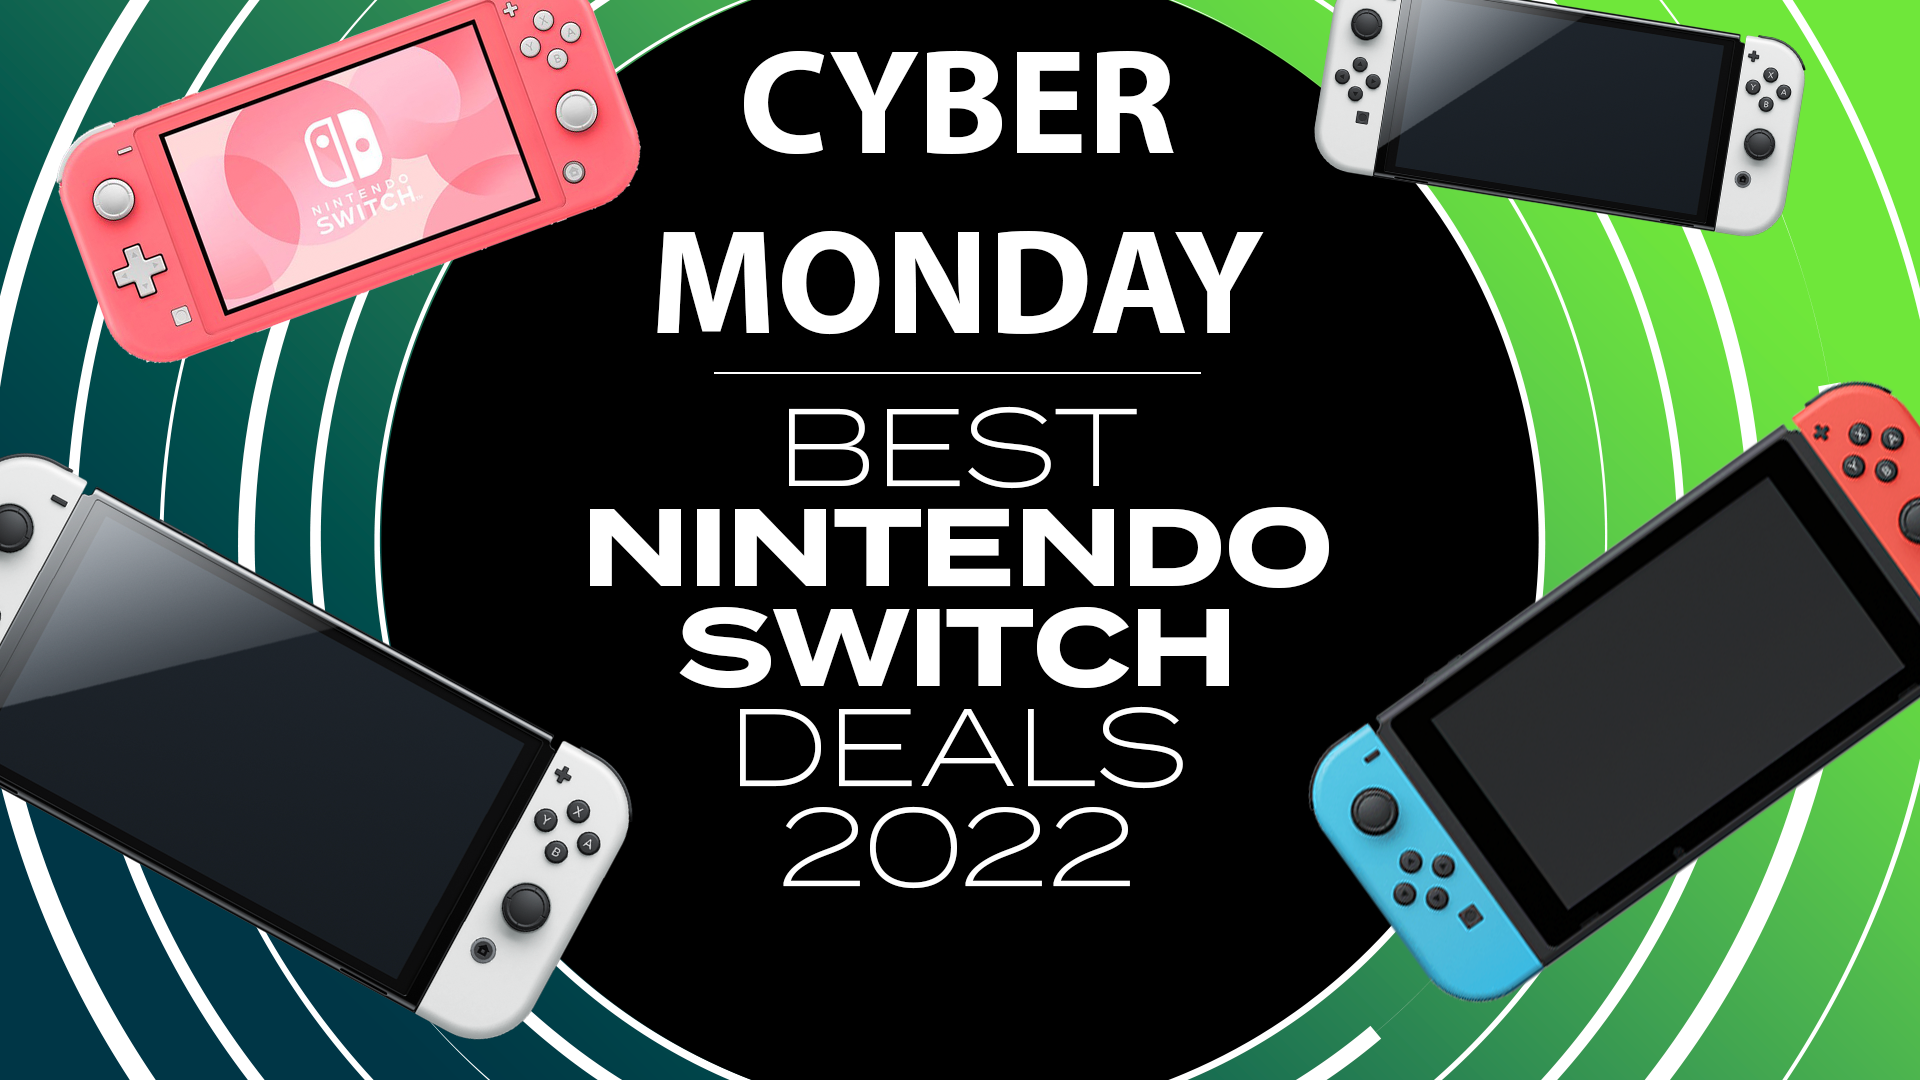 Nintendo Switch Cyber Monday deals 2022: all best offers LIVE | Eurogamer.net